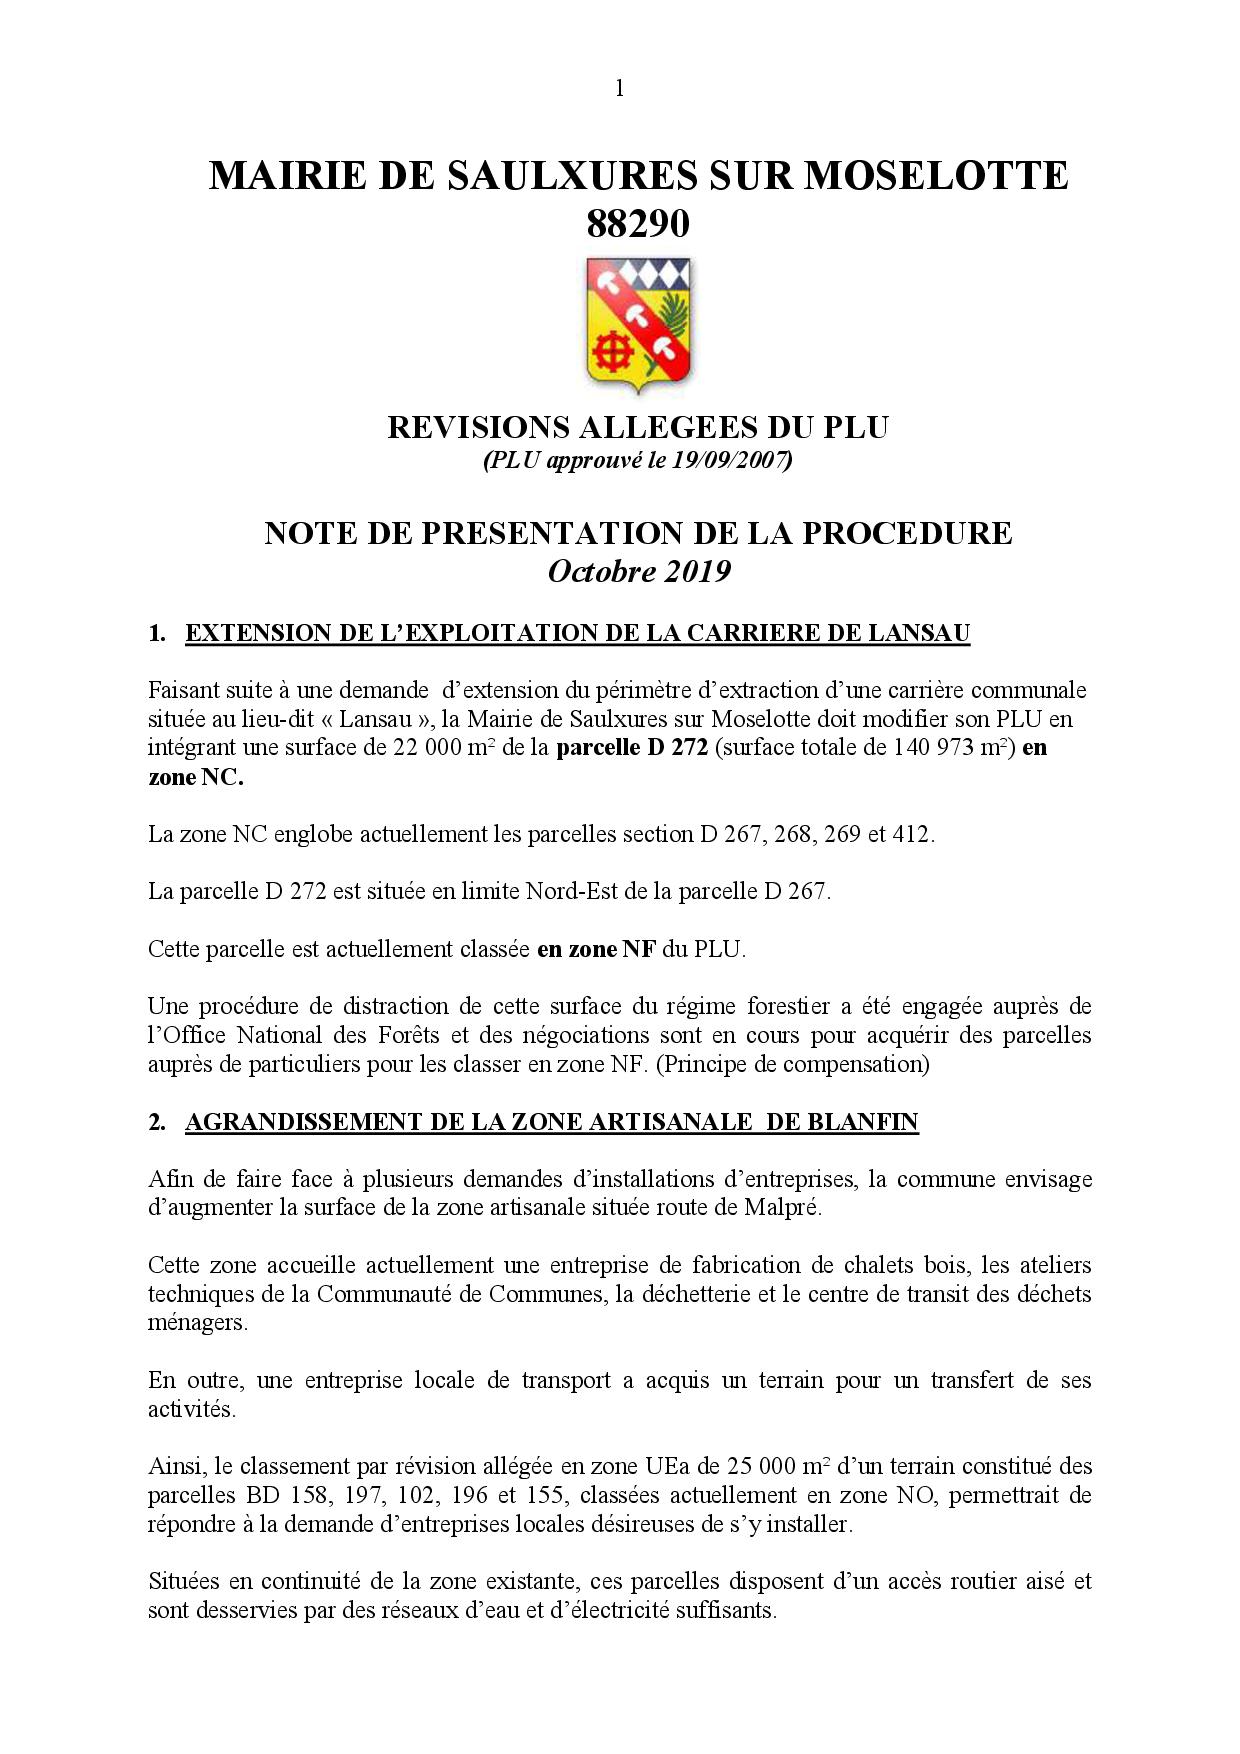 NOTE DE PRE­SEN­TA­TION PRO­CE­DURES REVI­SIONS ALLE­GEES DU PLU N°1 ET N°2